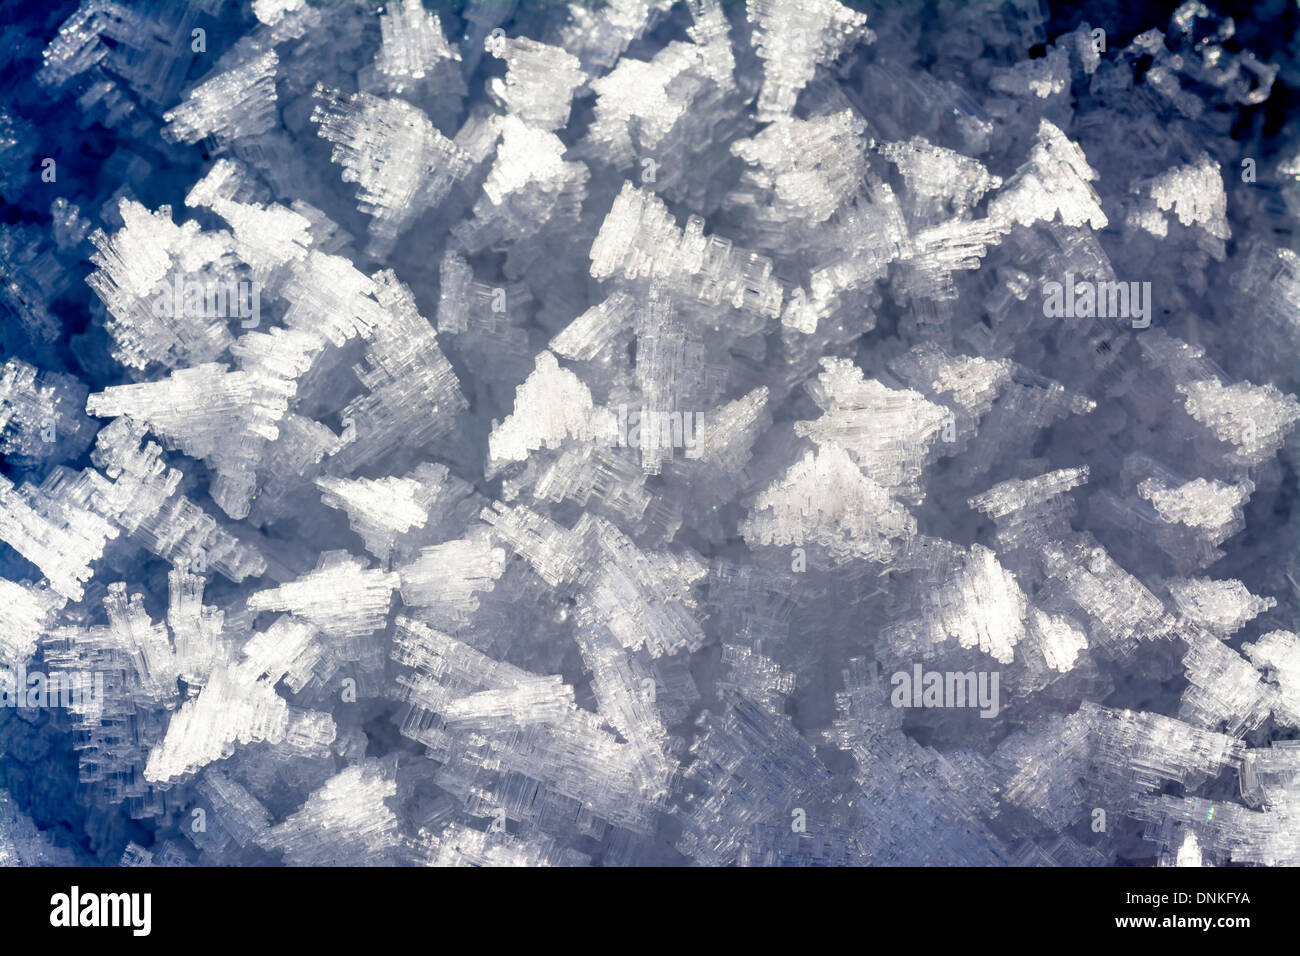 La criniera fatta di cristalli di ghiaccio d'acqua a freddo Foto Stock